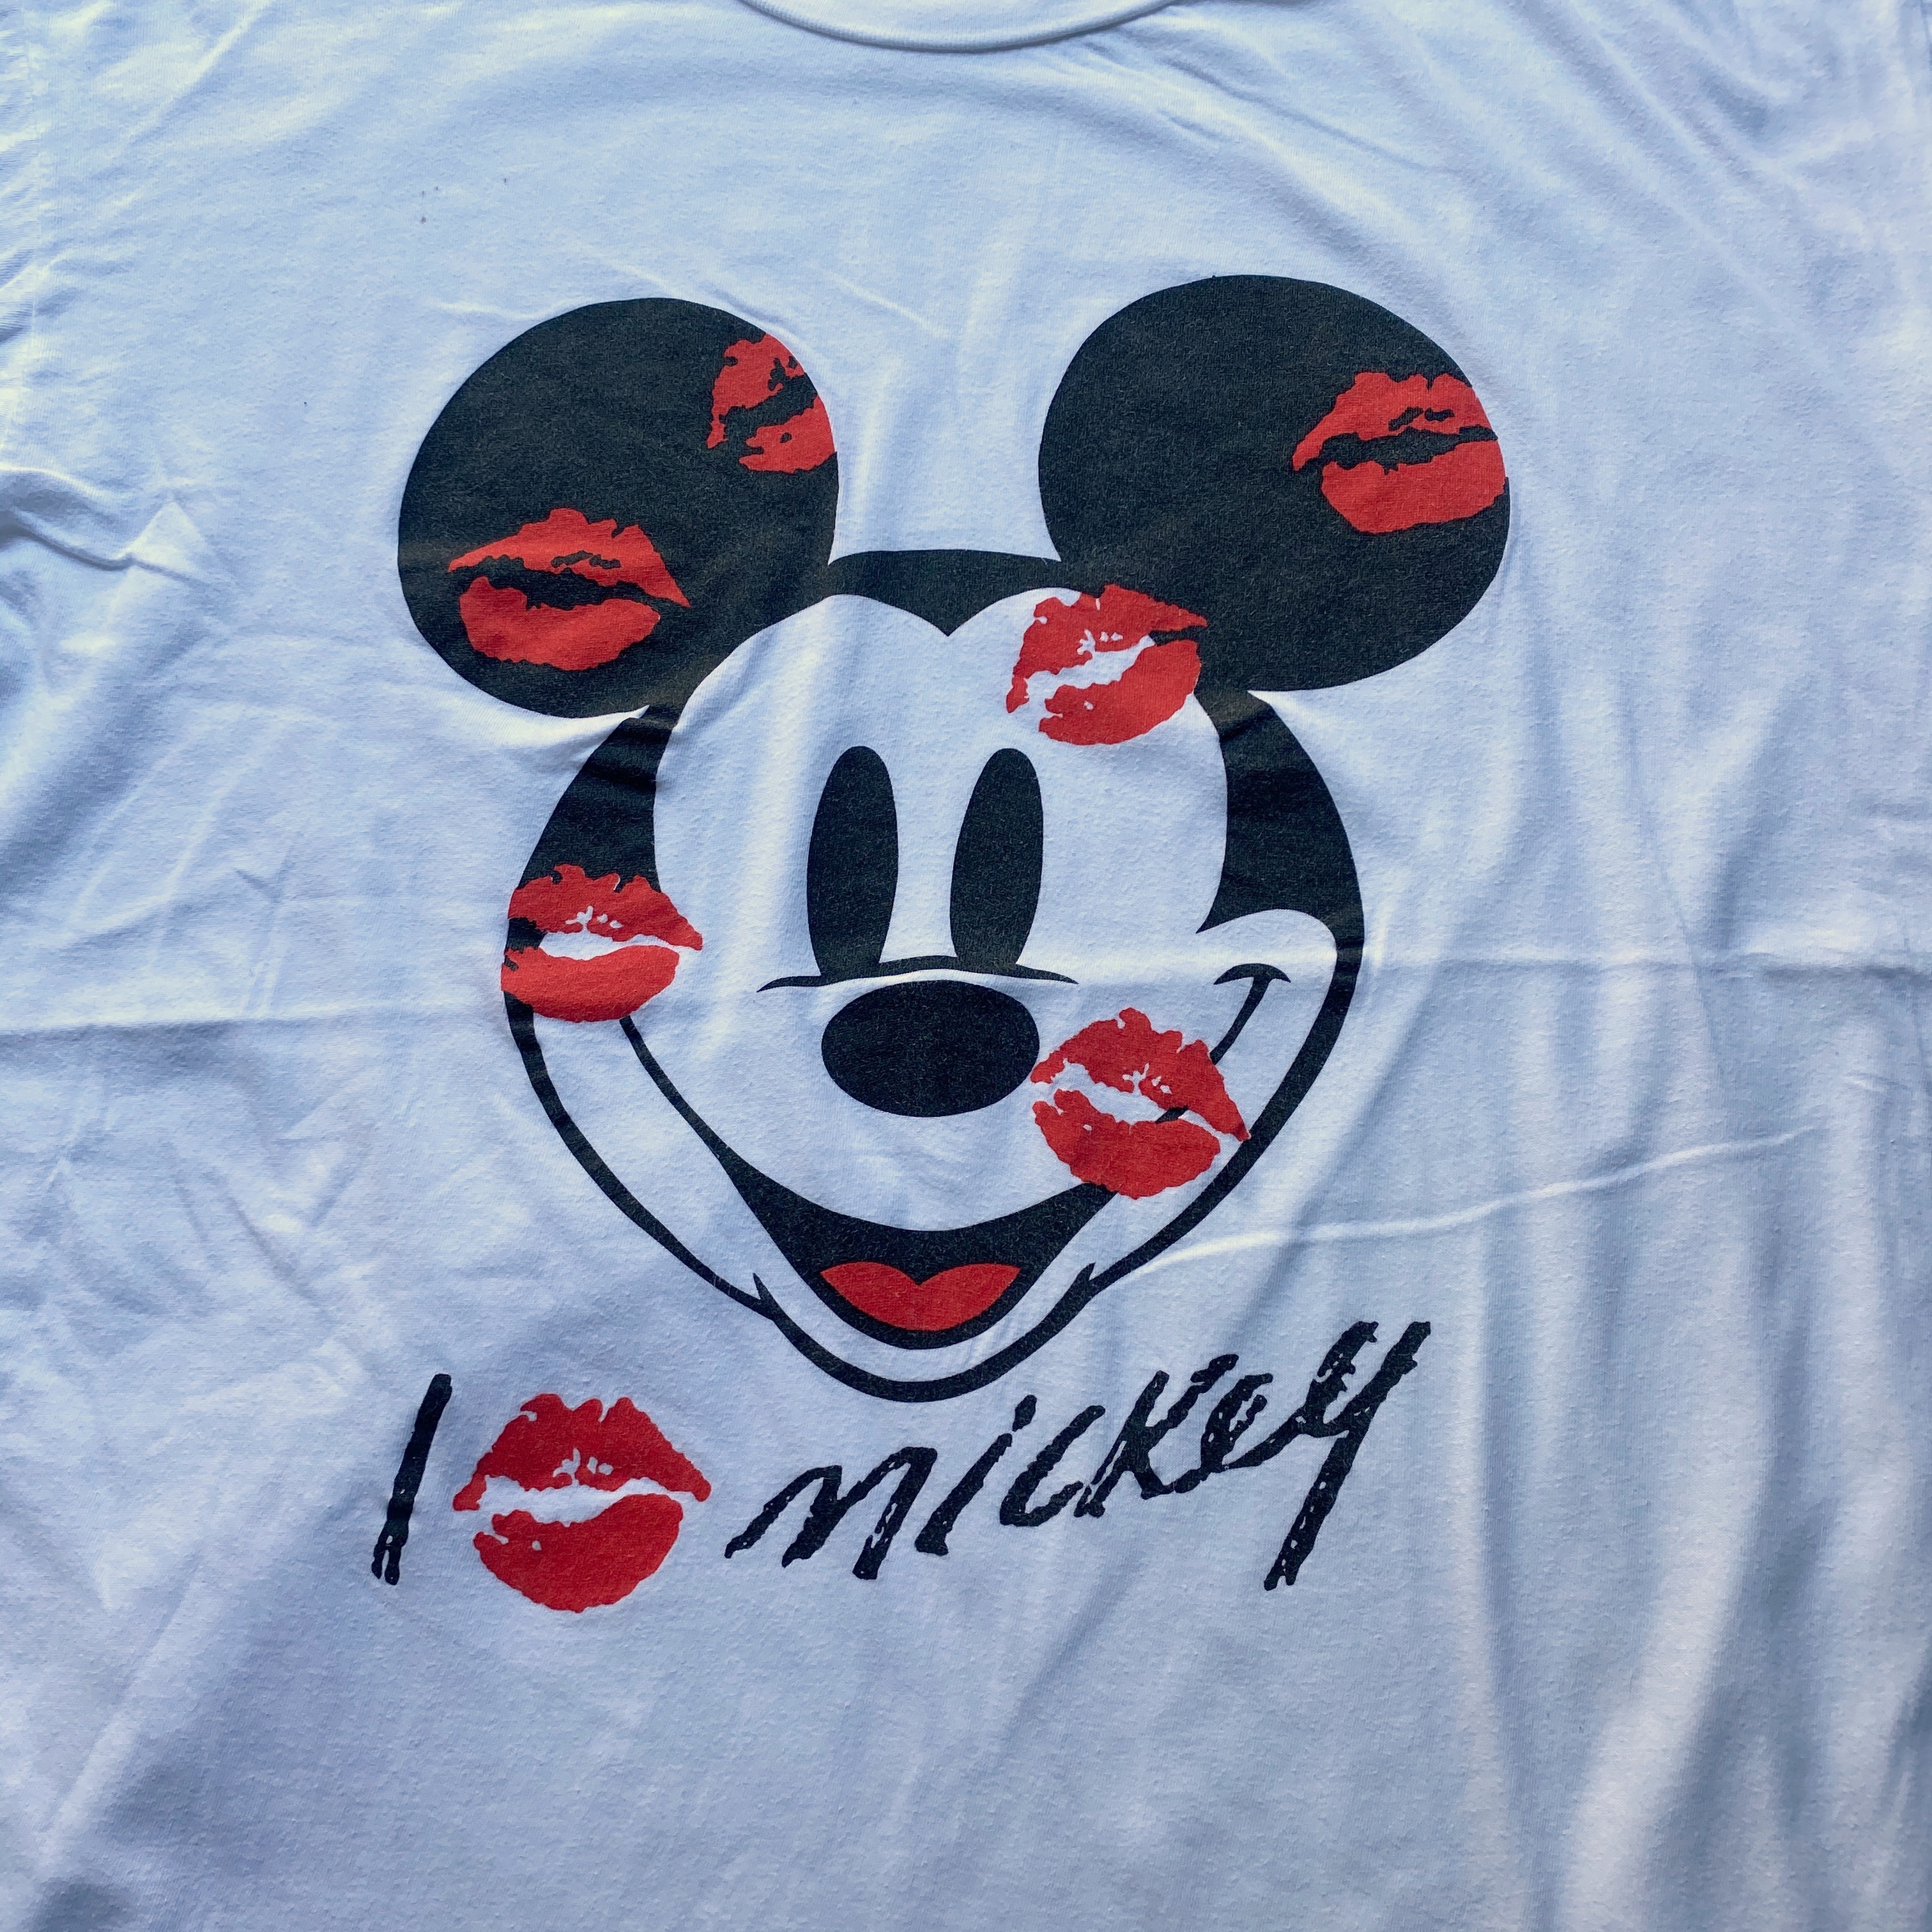 ビッグサイズ Micky Co Disney ディズニー Micky Mouse ミッキーマウス キスマーク プリントtシャツ キャラクターtシャツ メンズ4xl相当 レディース 古着 Tシャツ Cave 古着屋 公式 古着通販サイト